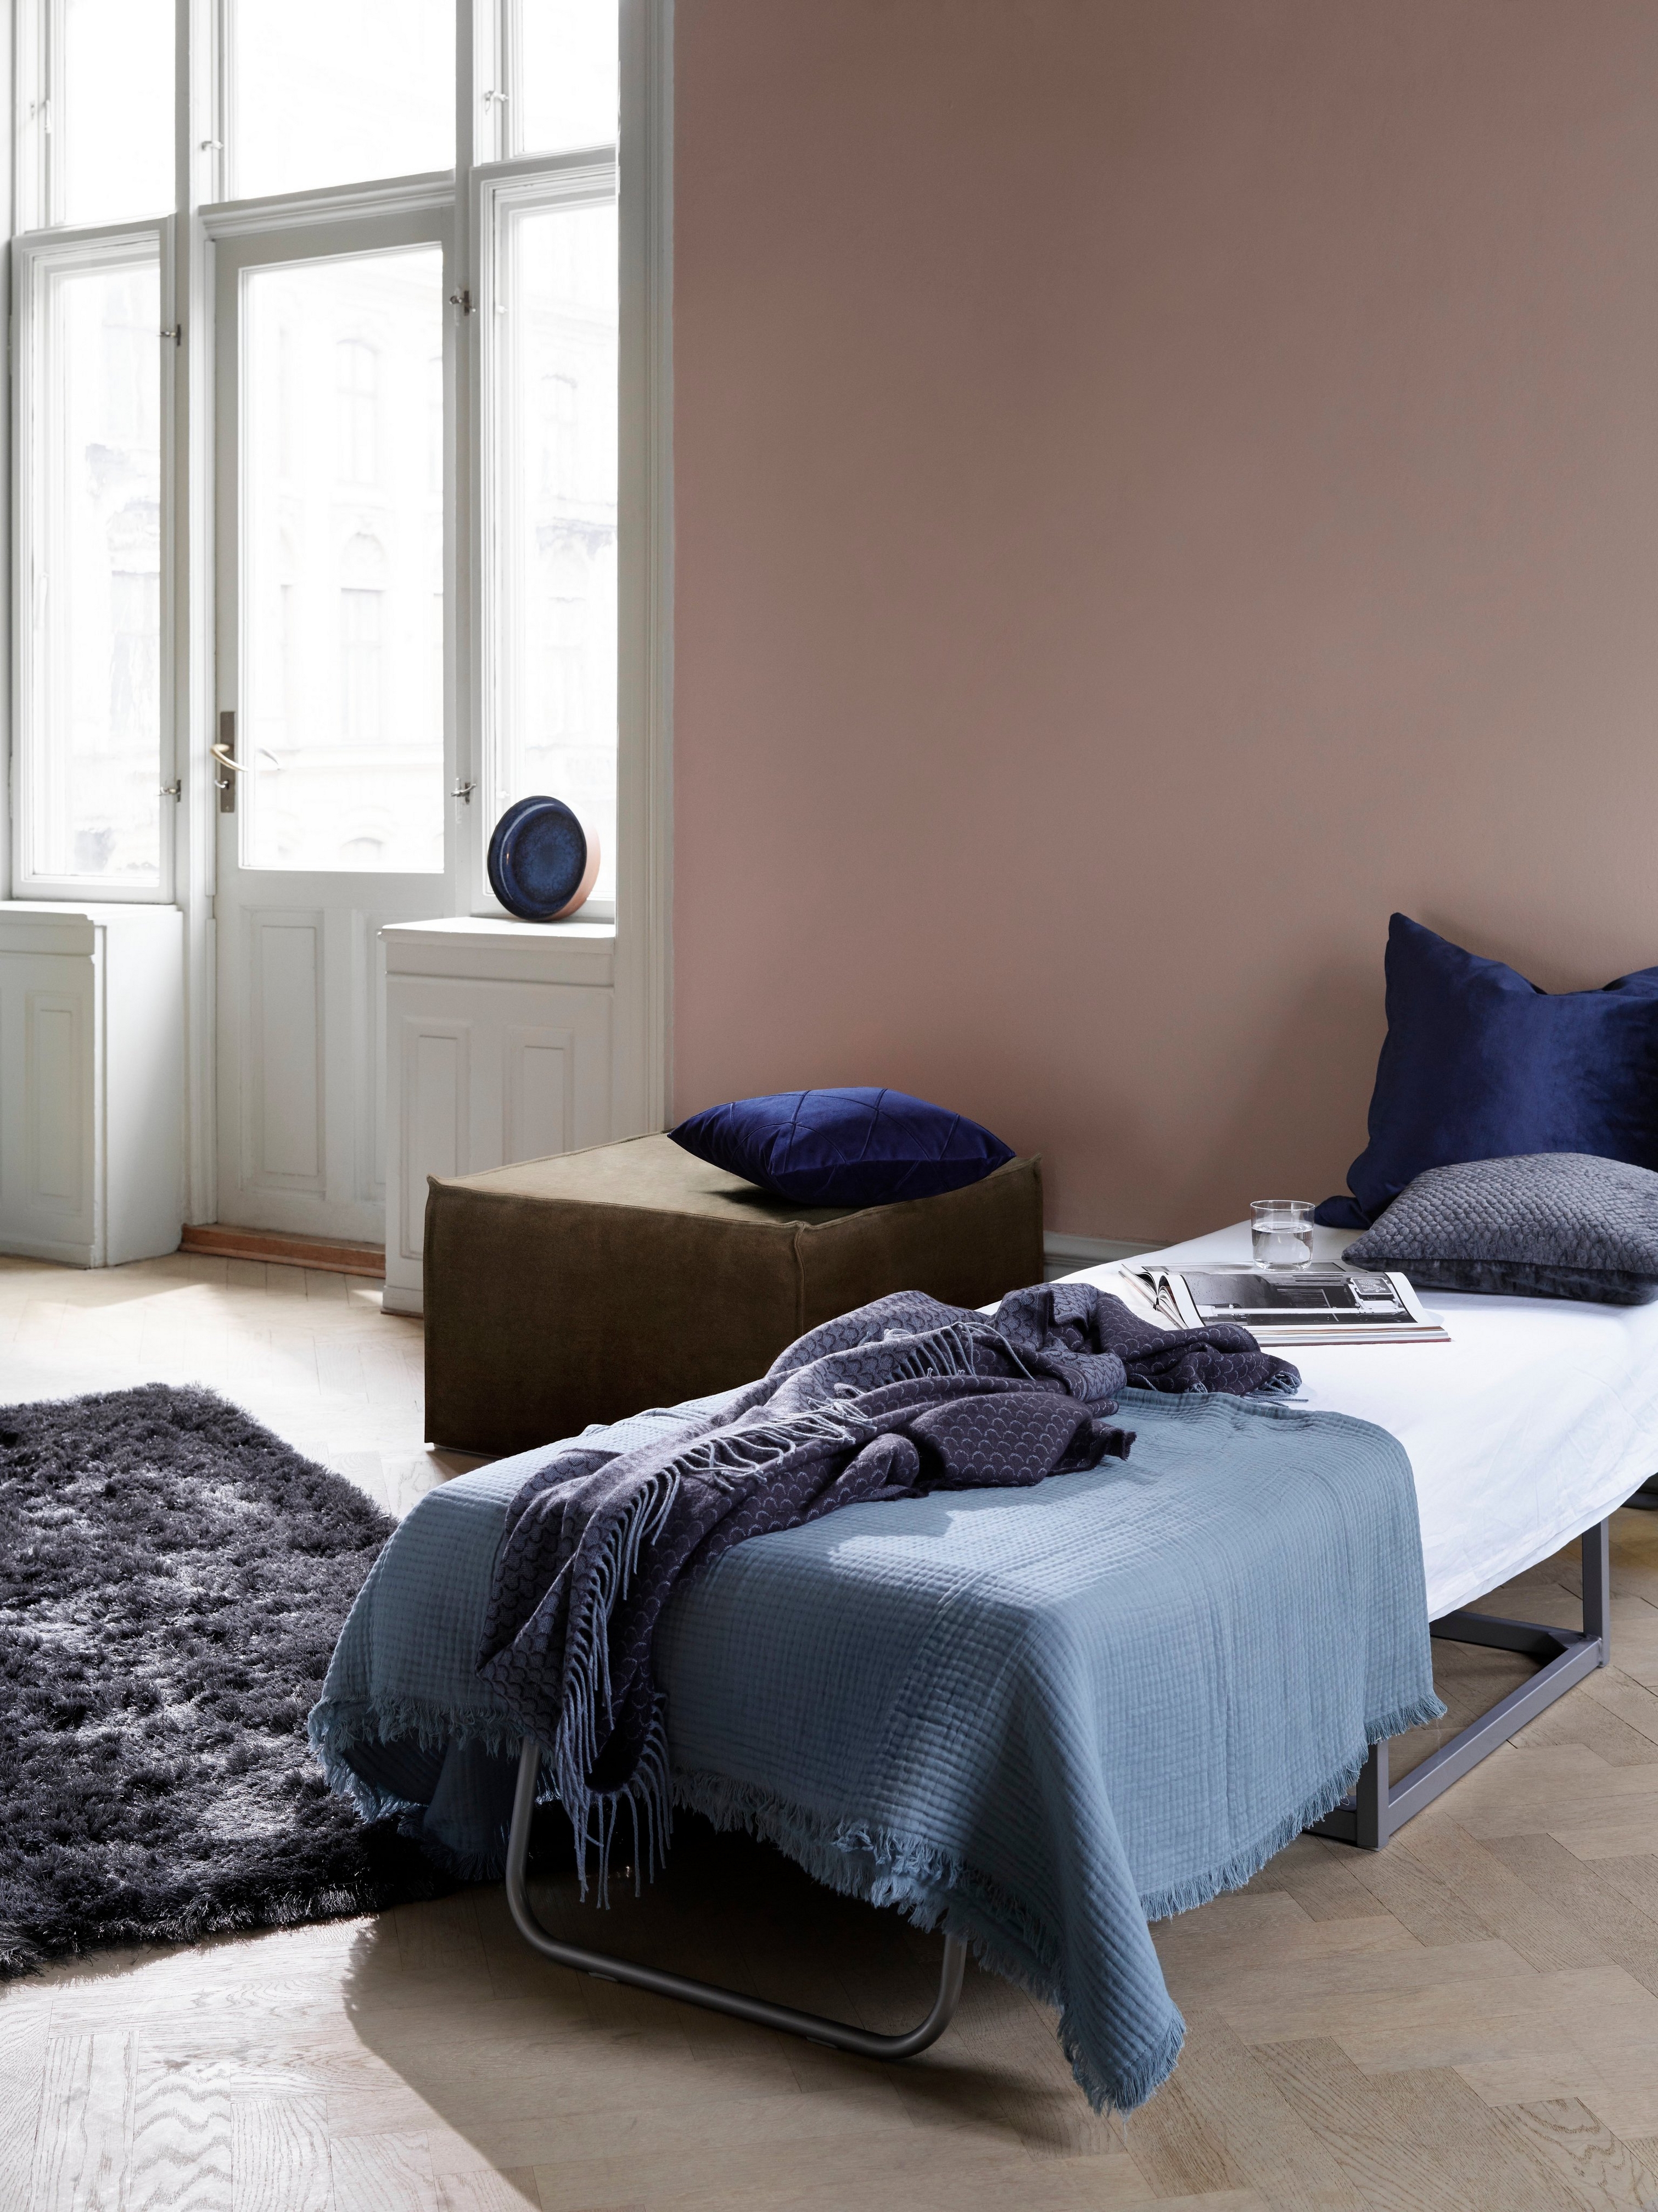 Φιλόξενο δωμάτιο με κρεβάτι επισκεπτών, μπλε κλινοσκεπάσματα και σκούρο χνουδωτό χαλί κοντά σε φωτεινά παράθυρα με το υποπόδιο Xtra.